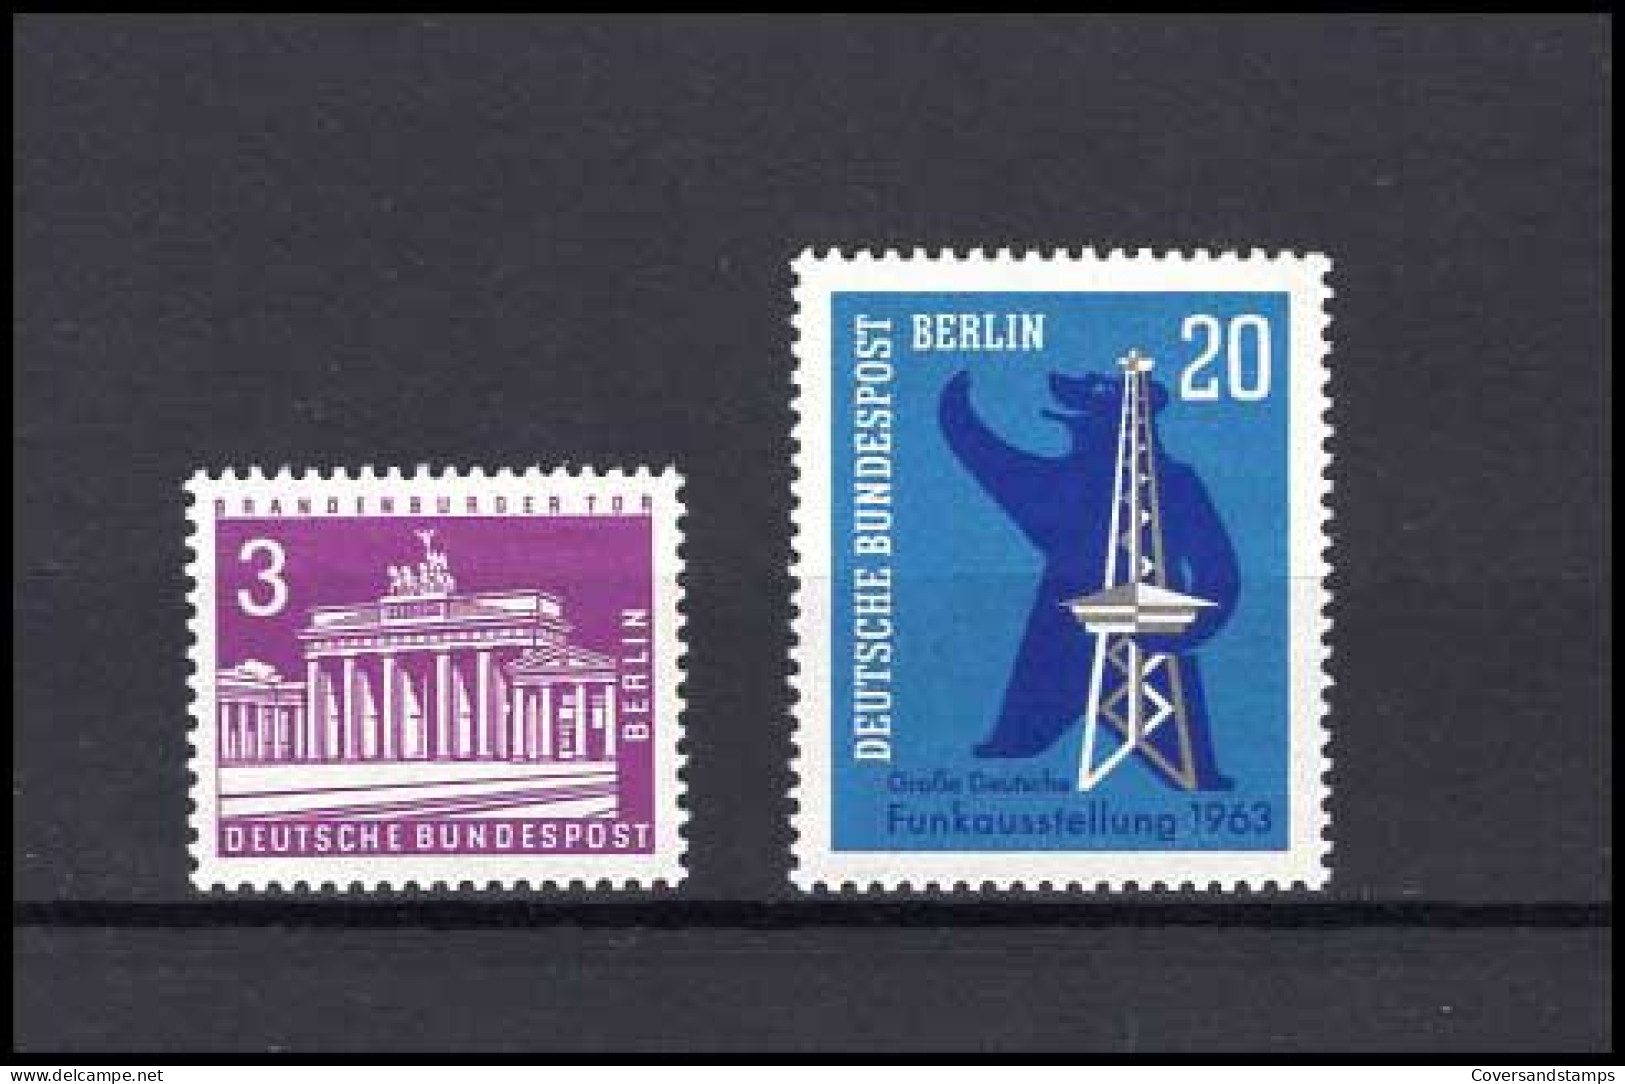  Bunderspost Berlin  Volledig Jaar / Jahrgang 1963   MNH - Ongebruikt